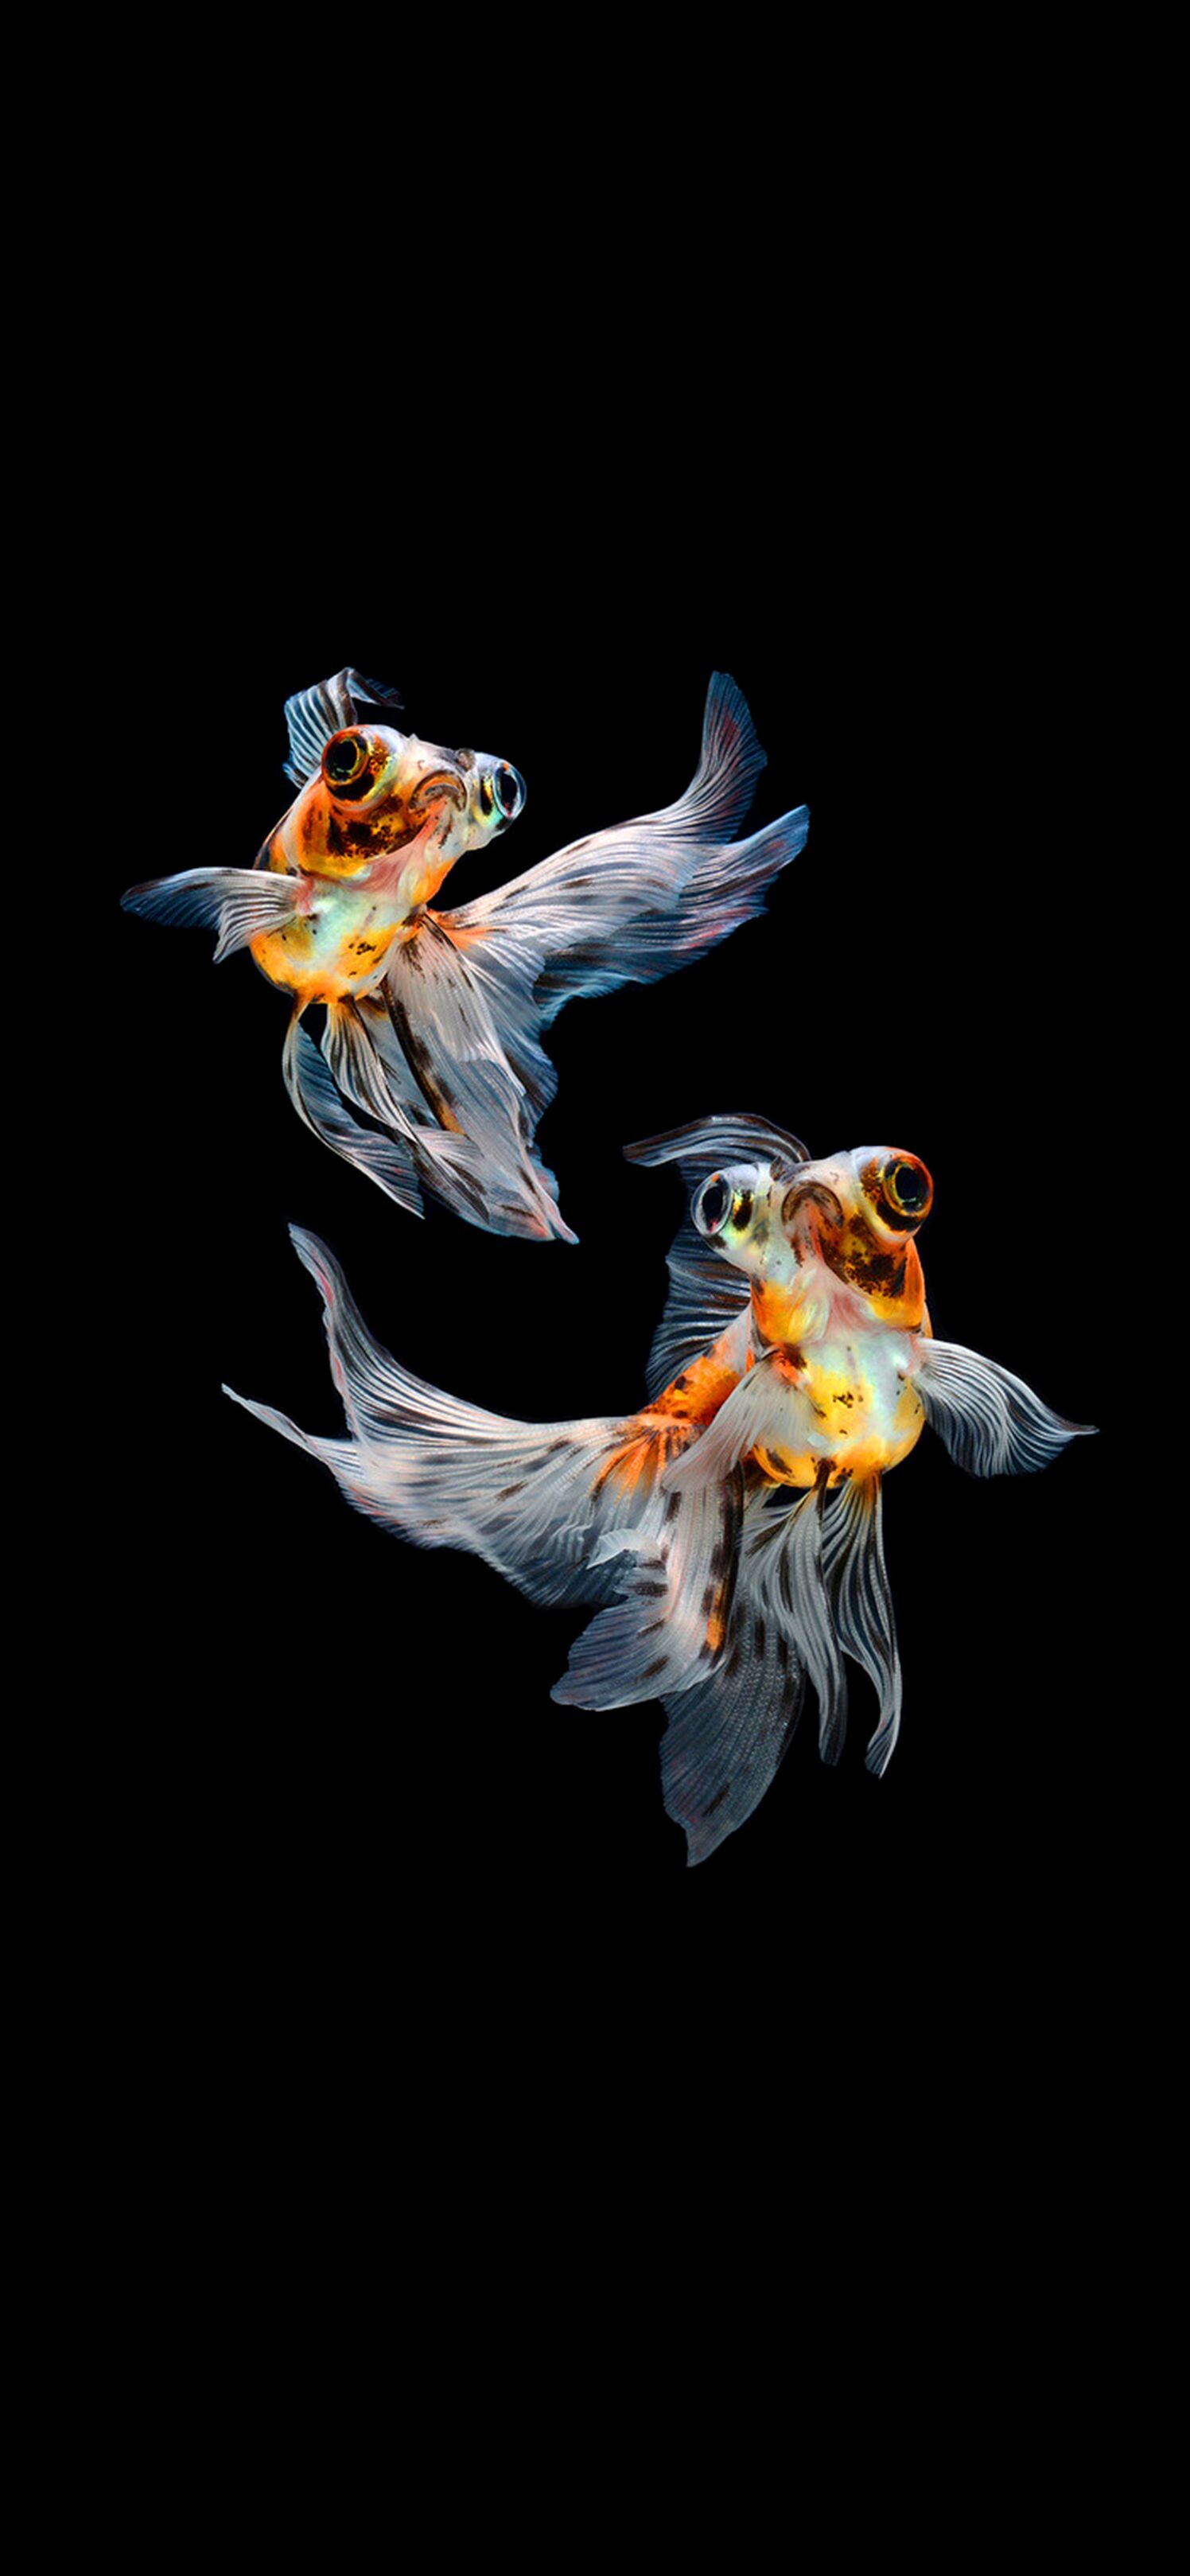 Gold Fish: Carassius auratus, Pets in indoor aquariums, A small member of the carp family. 1500x3240 HD Wallpaper.